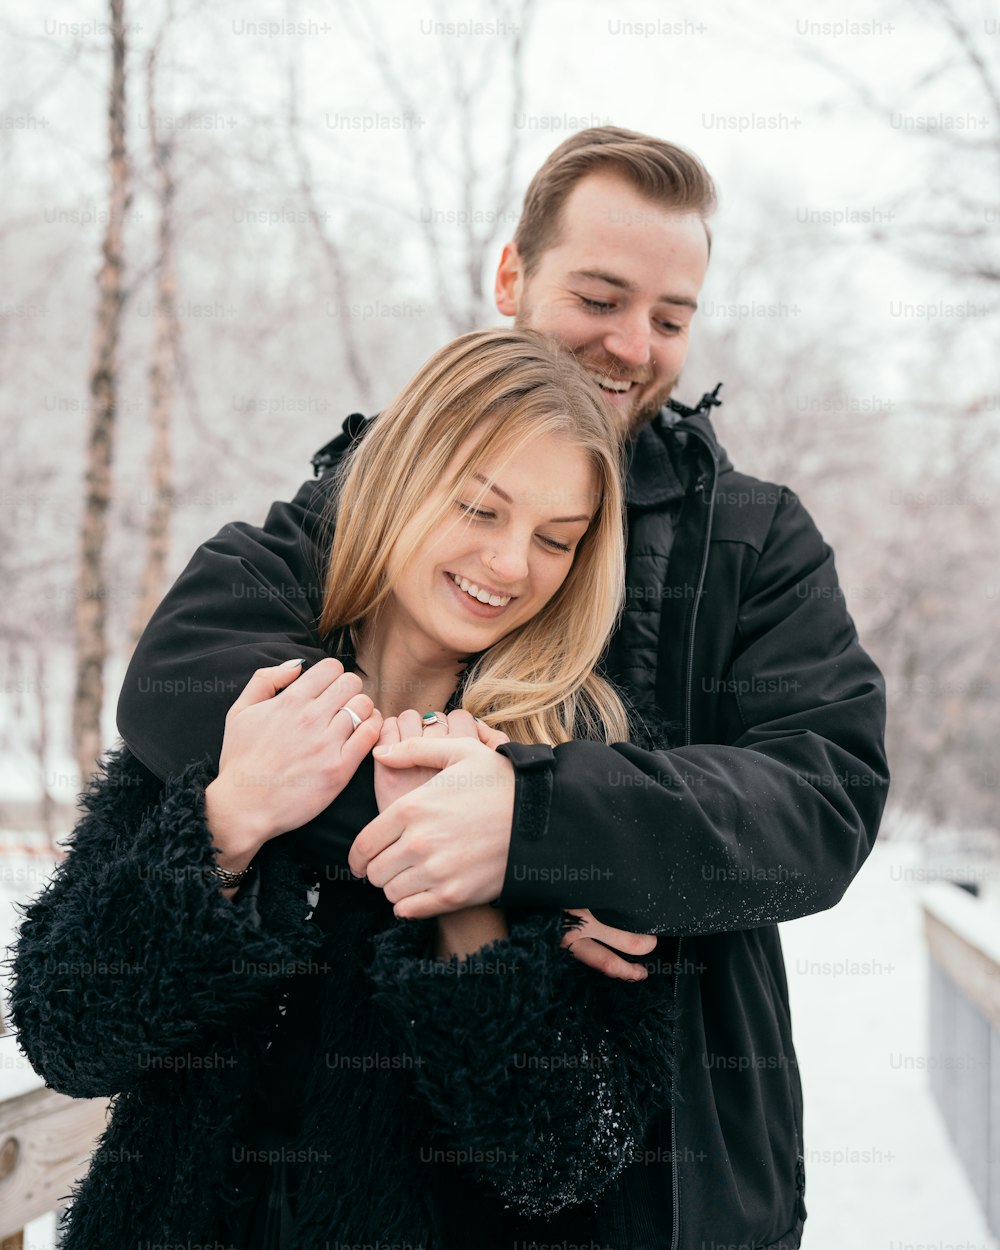 Un uomo e una donna si abbracciano nella neve